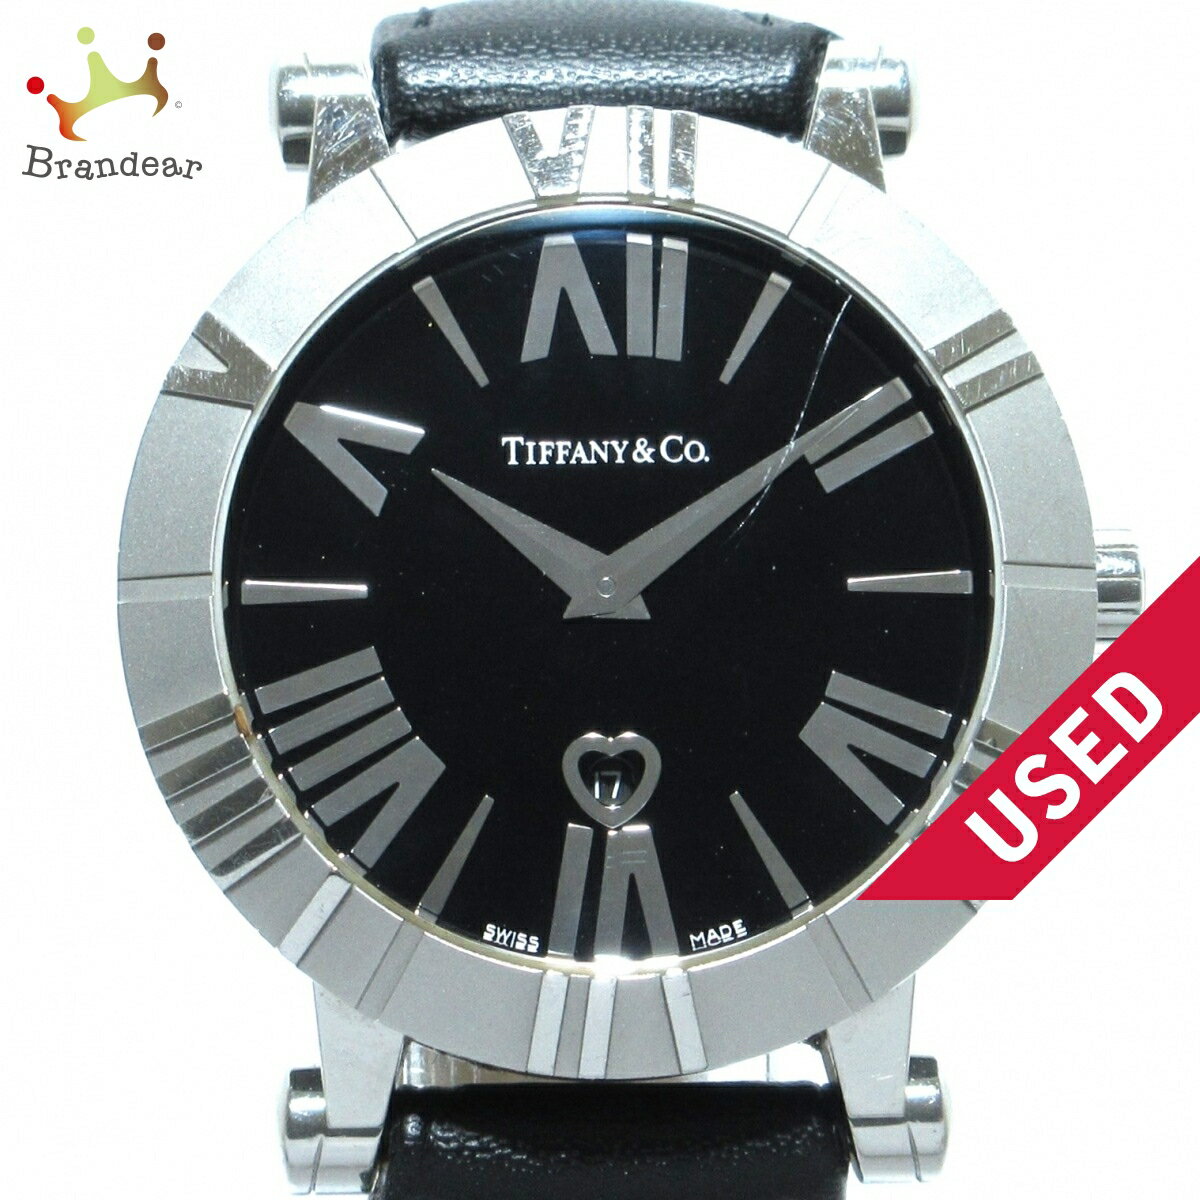 ティファニー(Tiffany)の価格・値段一覧 - 腕時計投資.com